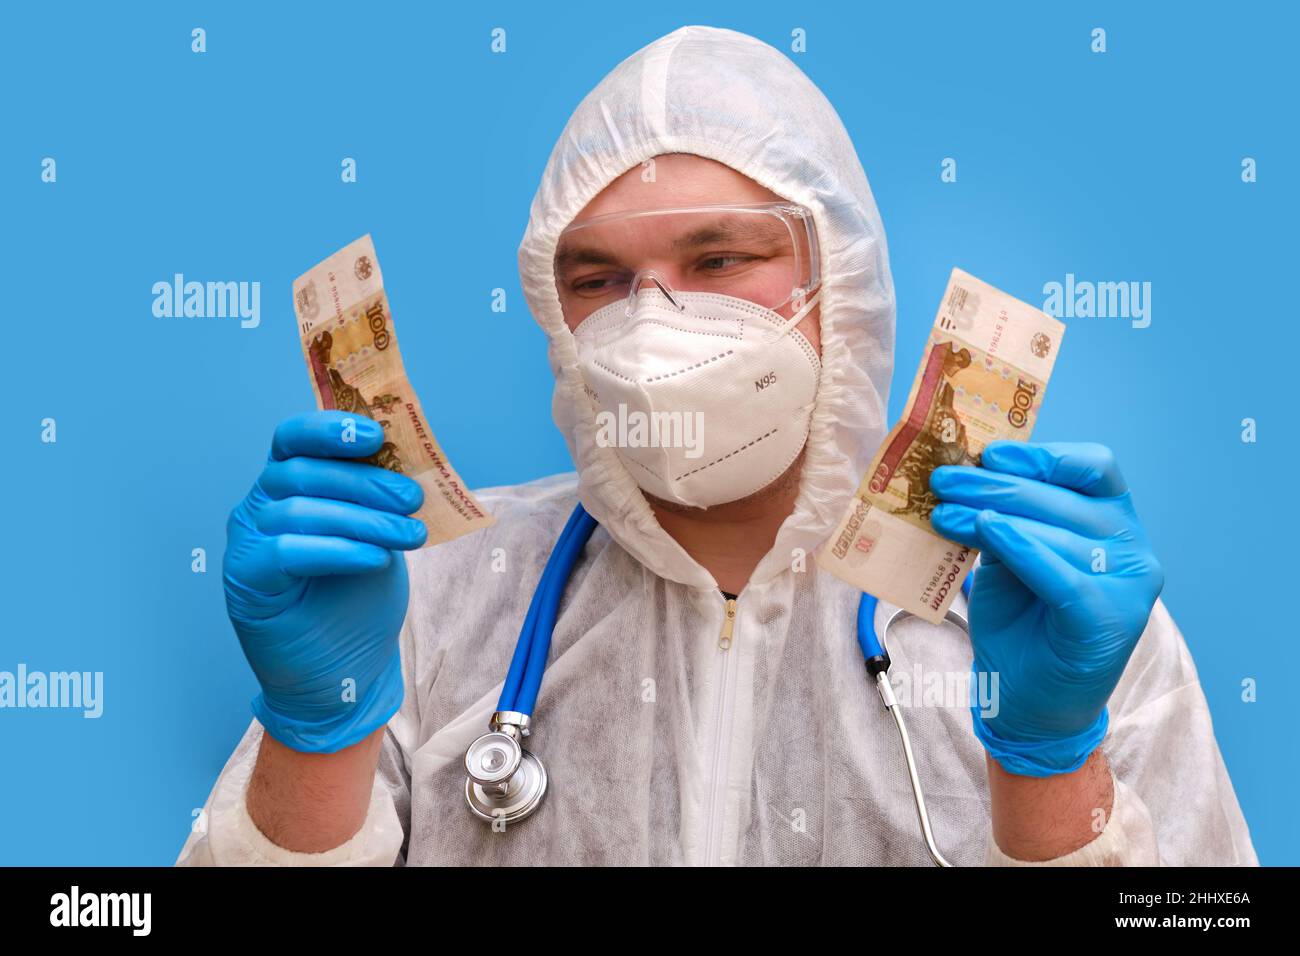 Mann Arzt Sanitäter in einem Schutzanzug Uniform mit Brille und Gesichtsmaske auf einem Studio blauen Hintergrund. Sanitäter in weißer antiviraler Schutzkleidung Stockfoto